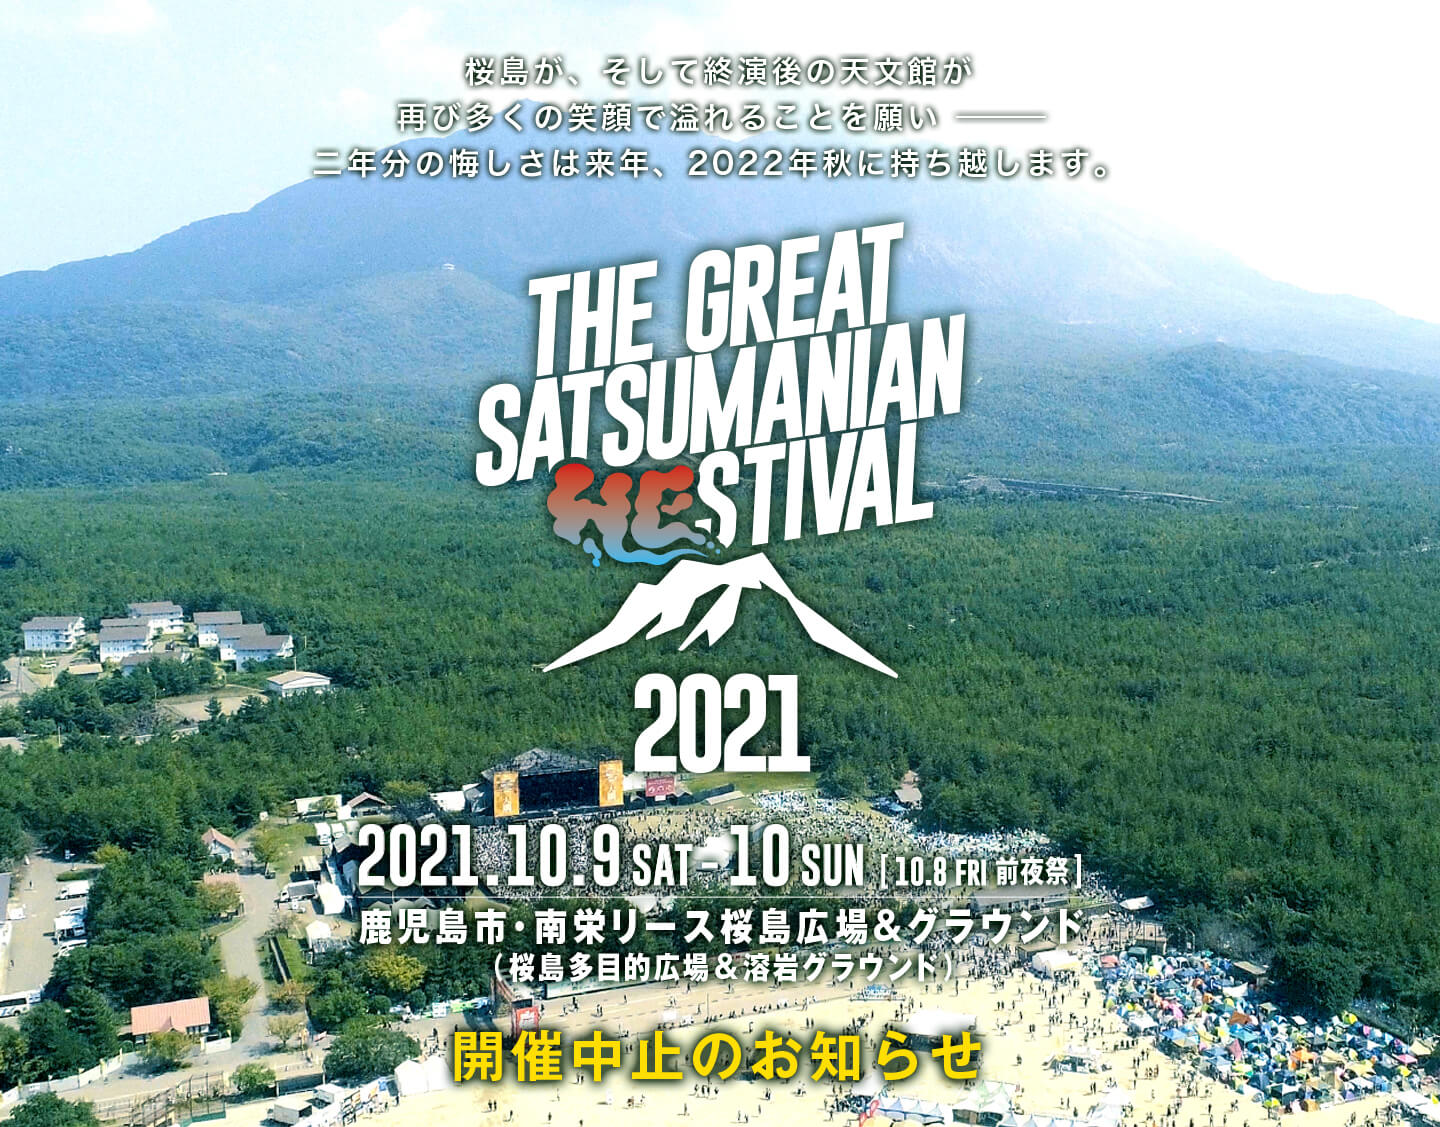 THE GREAT SATSUMANIAN HESTIVAL 2021(ザ・グレート・サツマニアン・ヘスティバル)